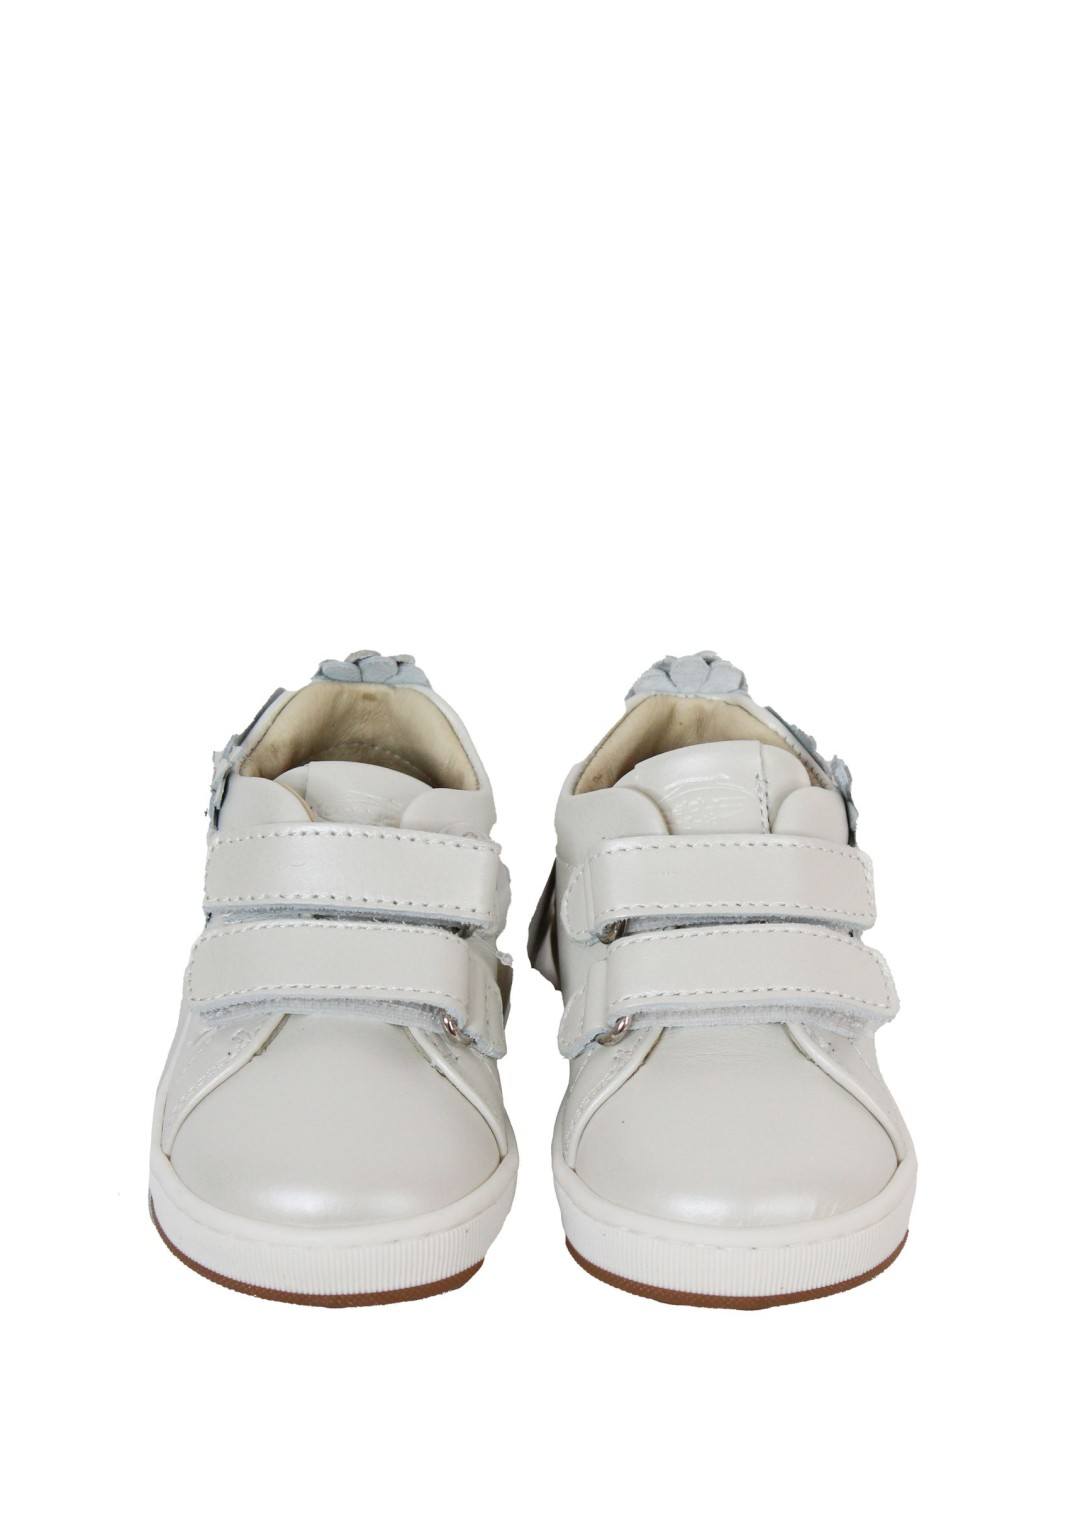 Balducci - Sneaker Fiori - Bimba - CITA6211V